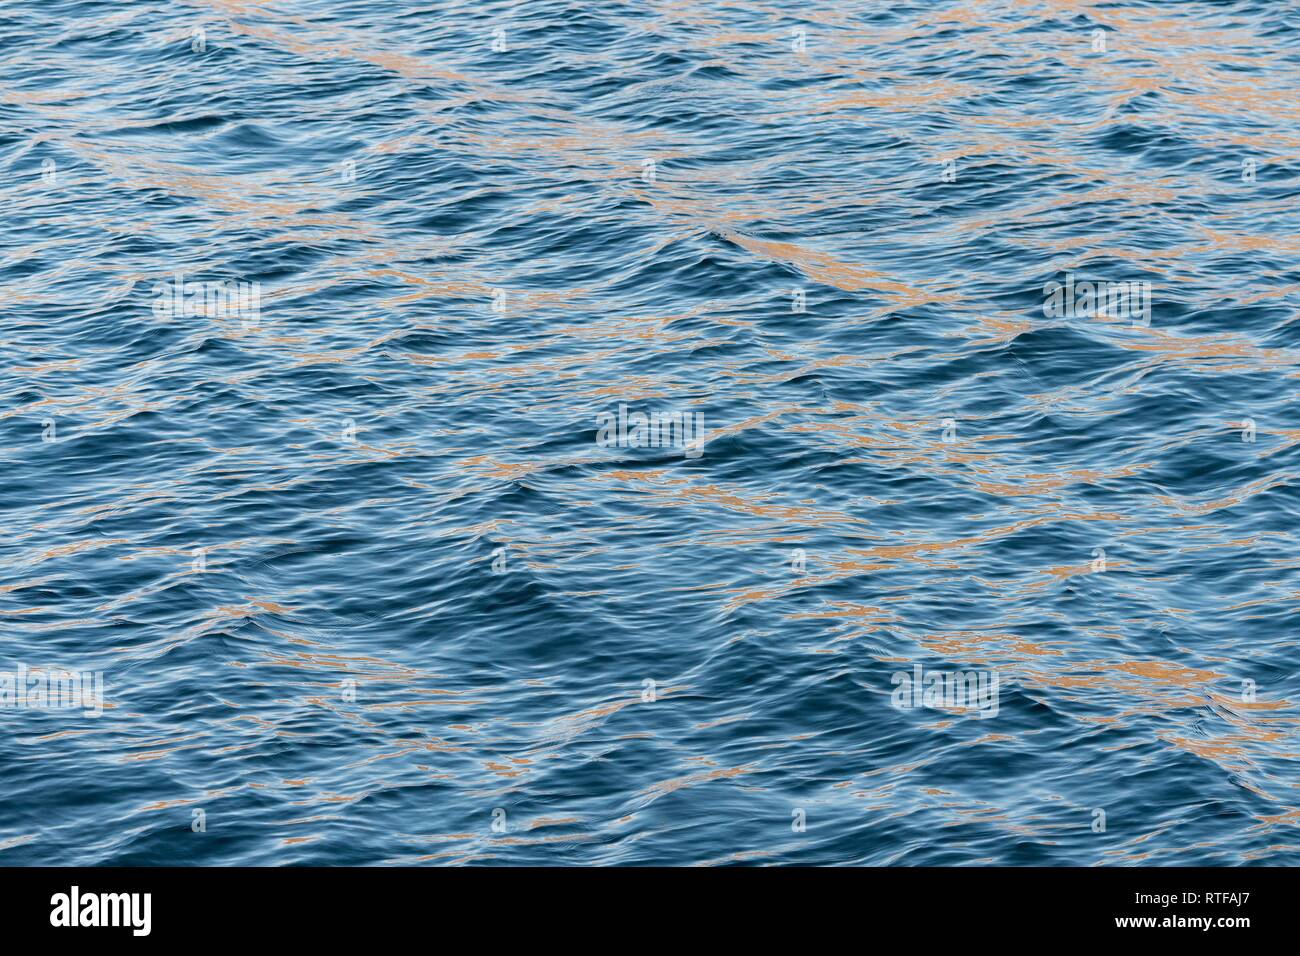 Superficie de agua ondulante, la superficie del mar, el mar de Groenlandia, Groenlandia Foto de stock